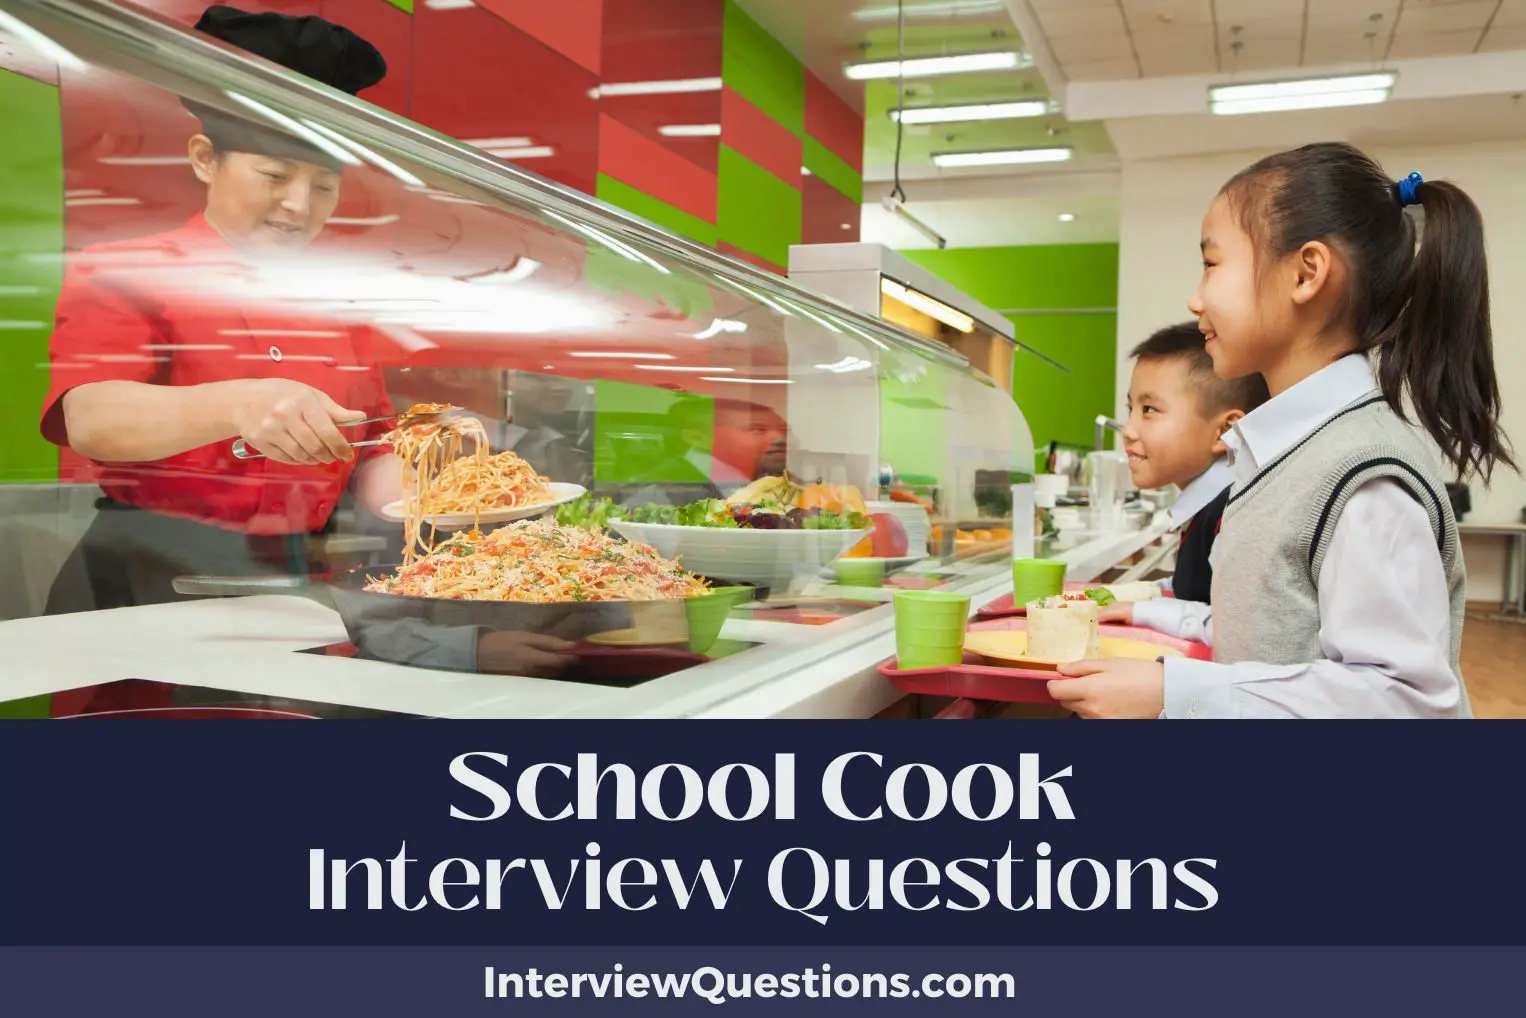 School Cook Interview Questions